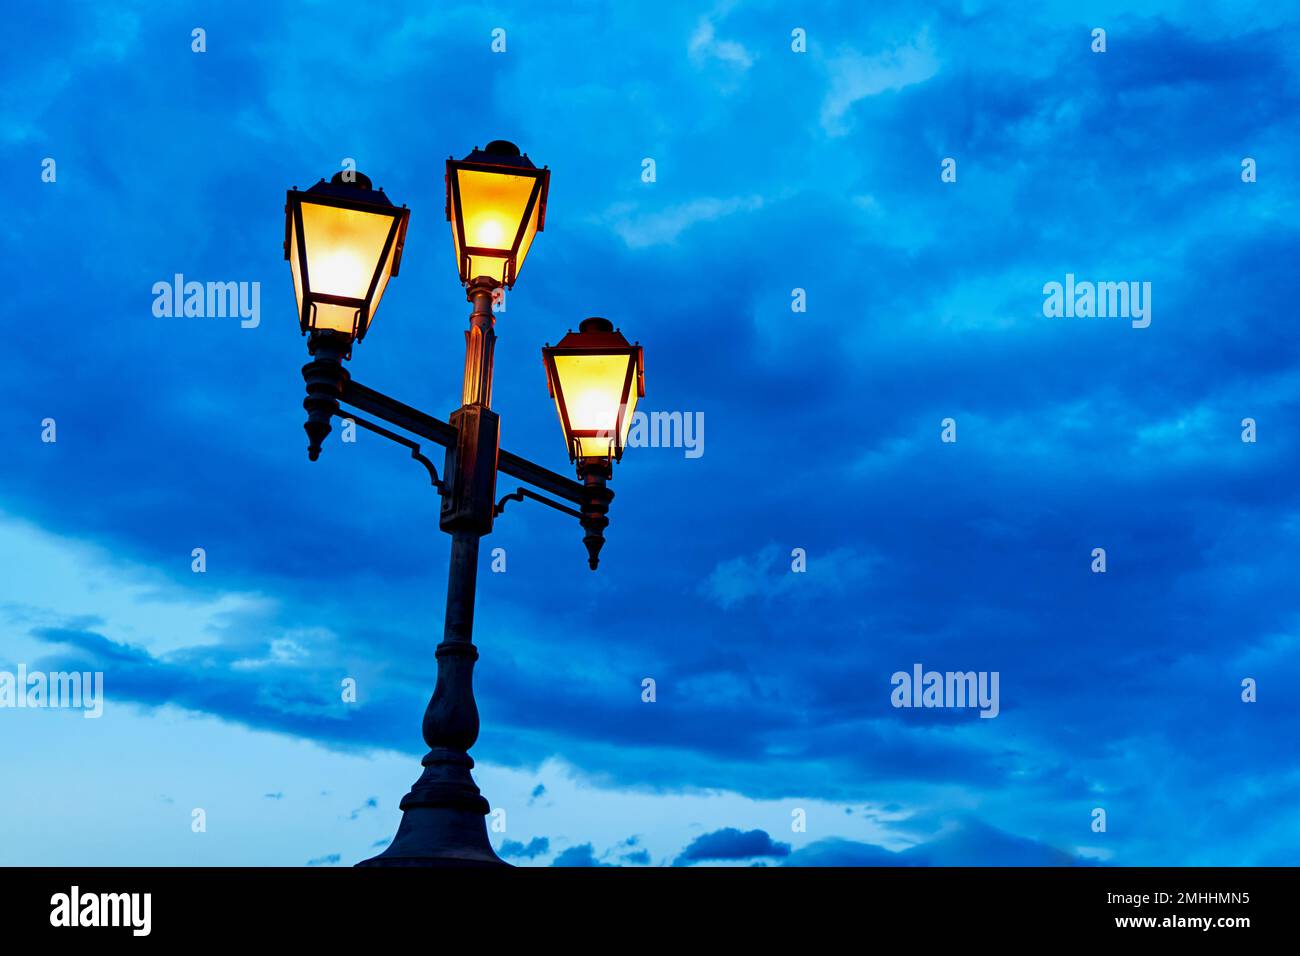 Le lampadaire des lumières de la ville du vieux quartier de la ville. La  lumière chaude de la lanterne contre le ciel bleu froid Photo Stock - Alamy